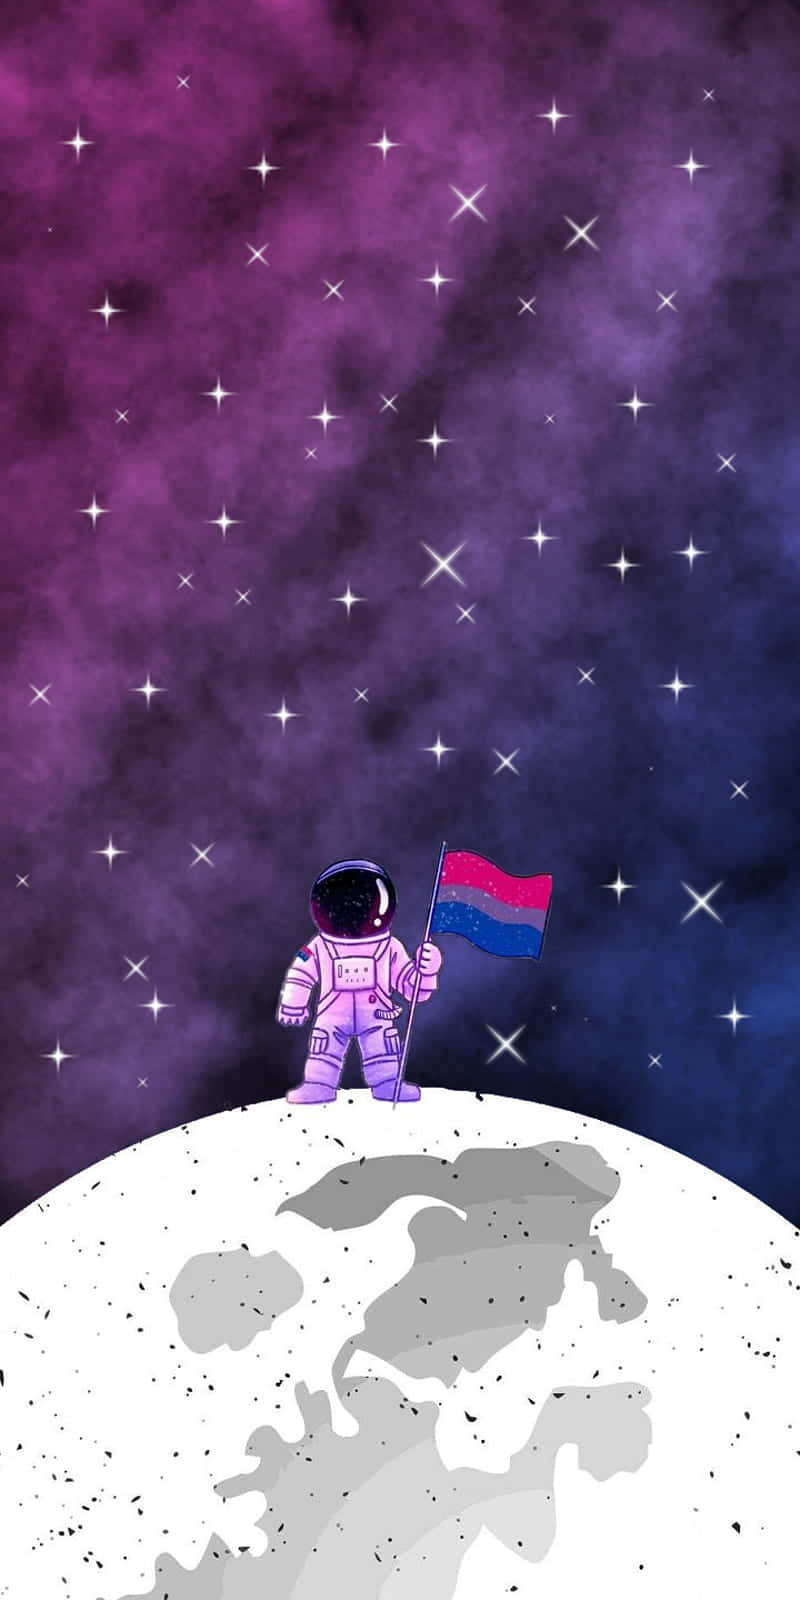 A Cartoon Astronaut On The Moon With A Flag